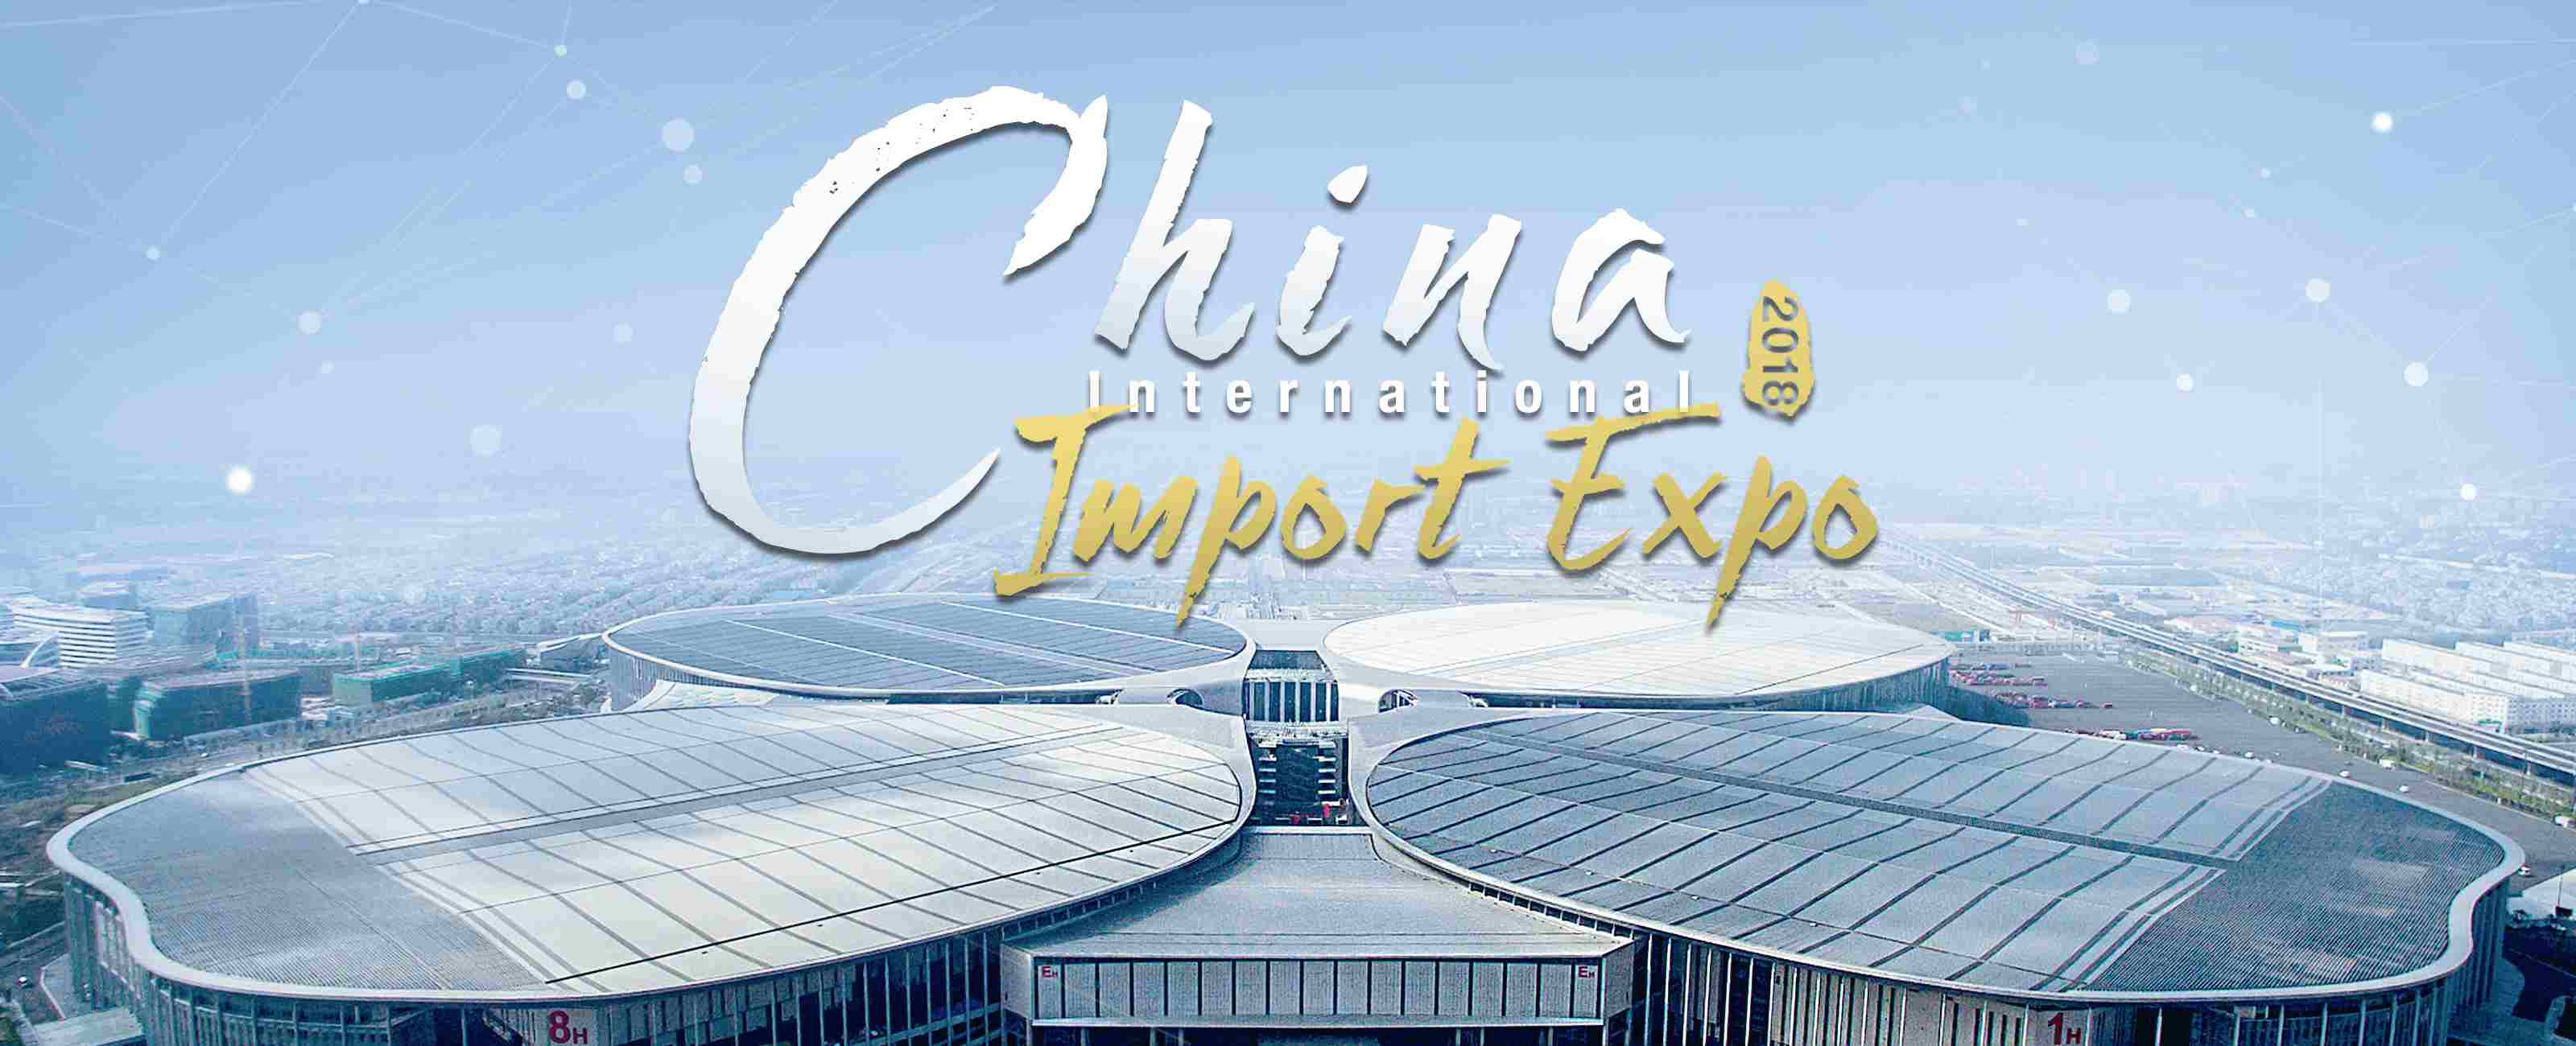 LVMH, major partner to China International Import Expo (CIIE) - LVMH